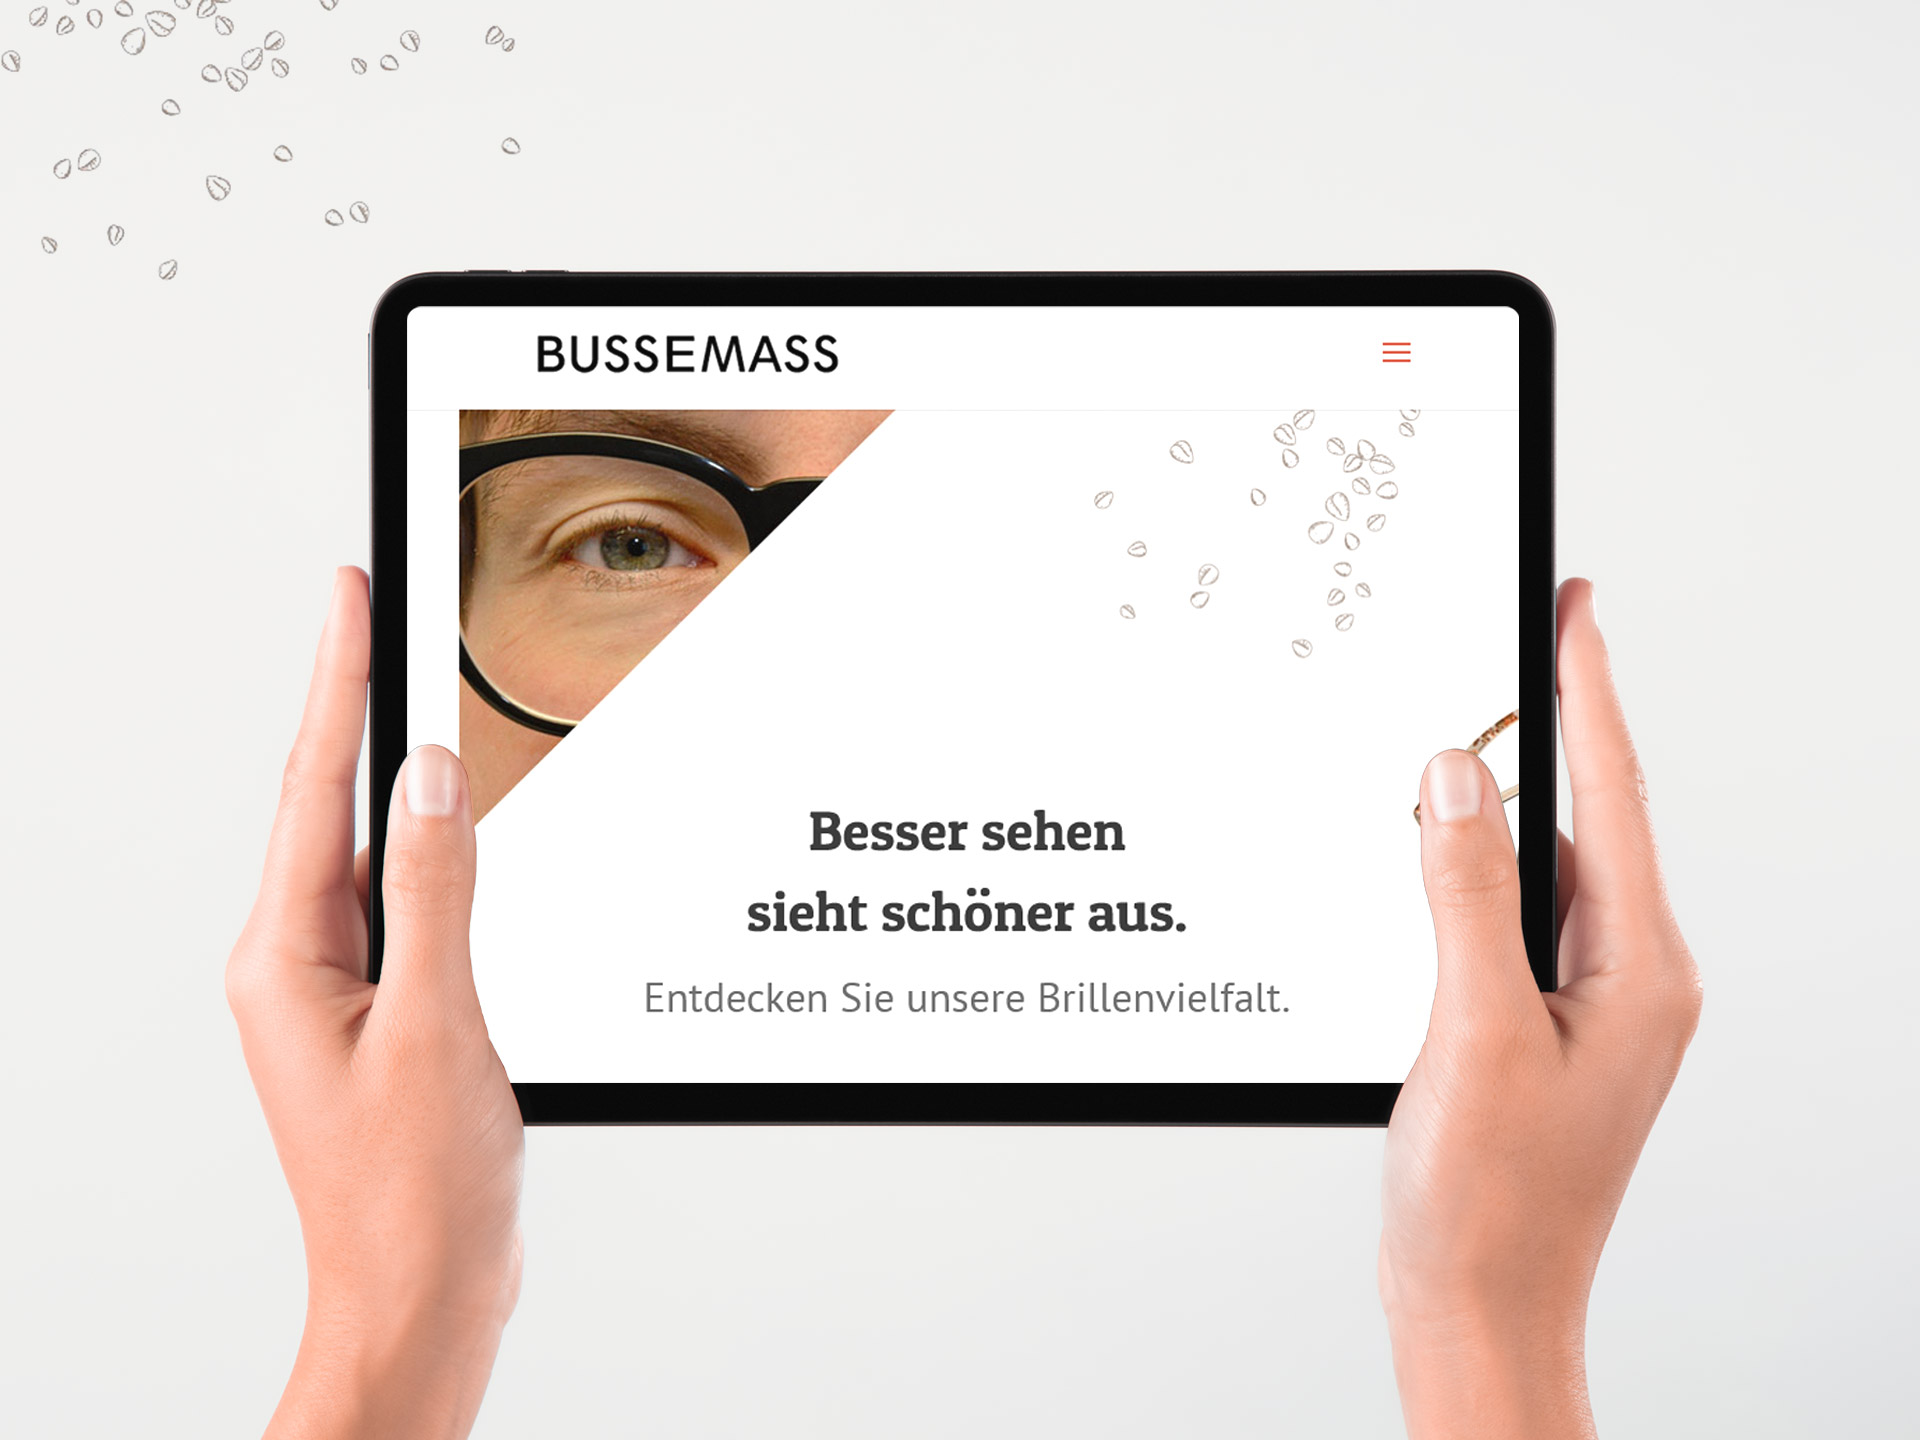 furore Webagentur und Werbeagentur, professionelle Website für Augenoptiker Bussemass